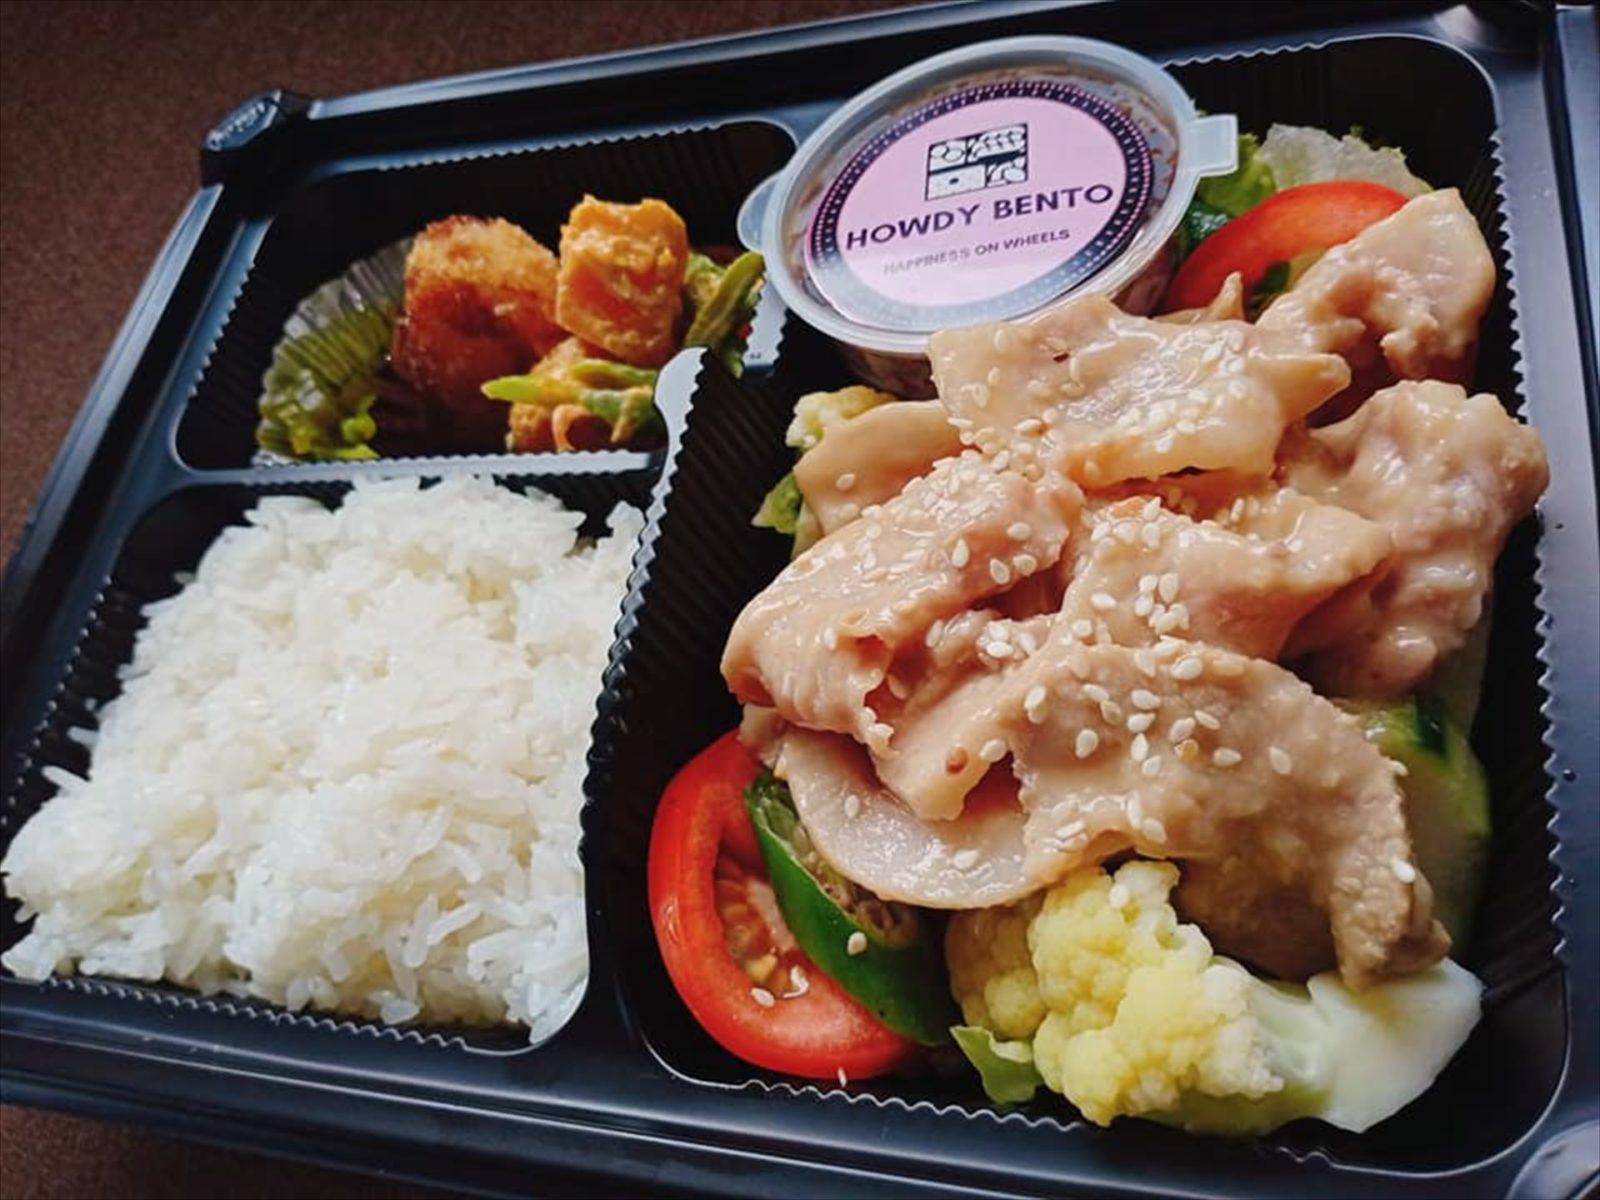 昼食は弁当。日本のものとほぼ同じなので食べやすいです